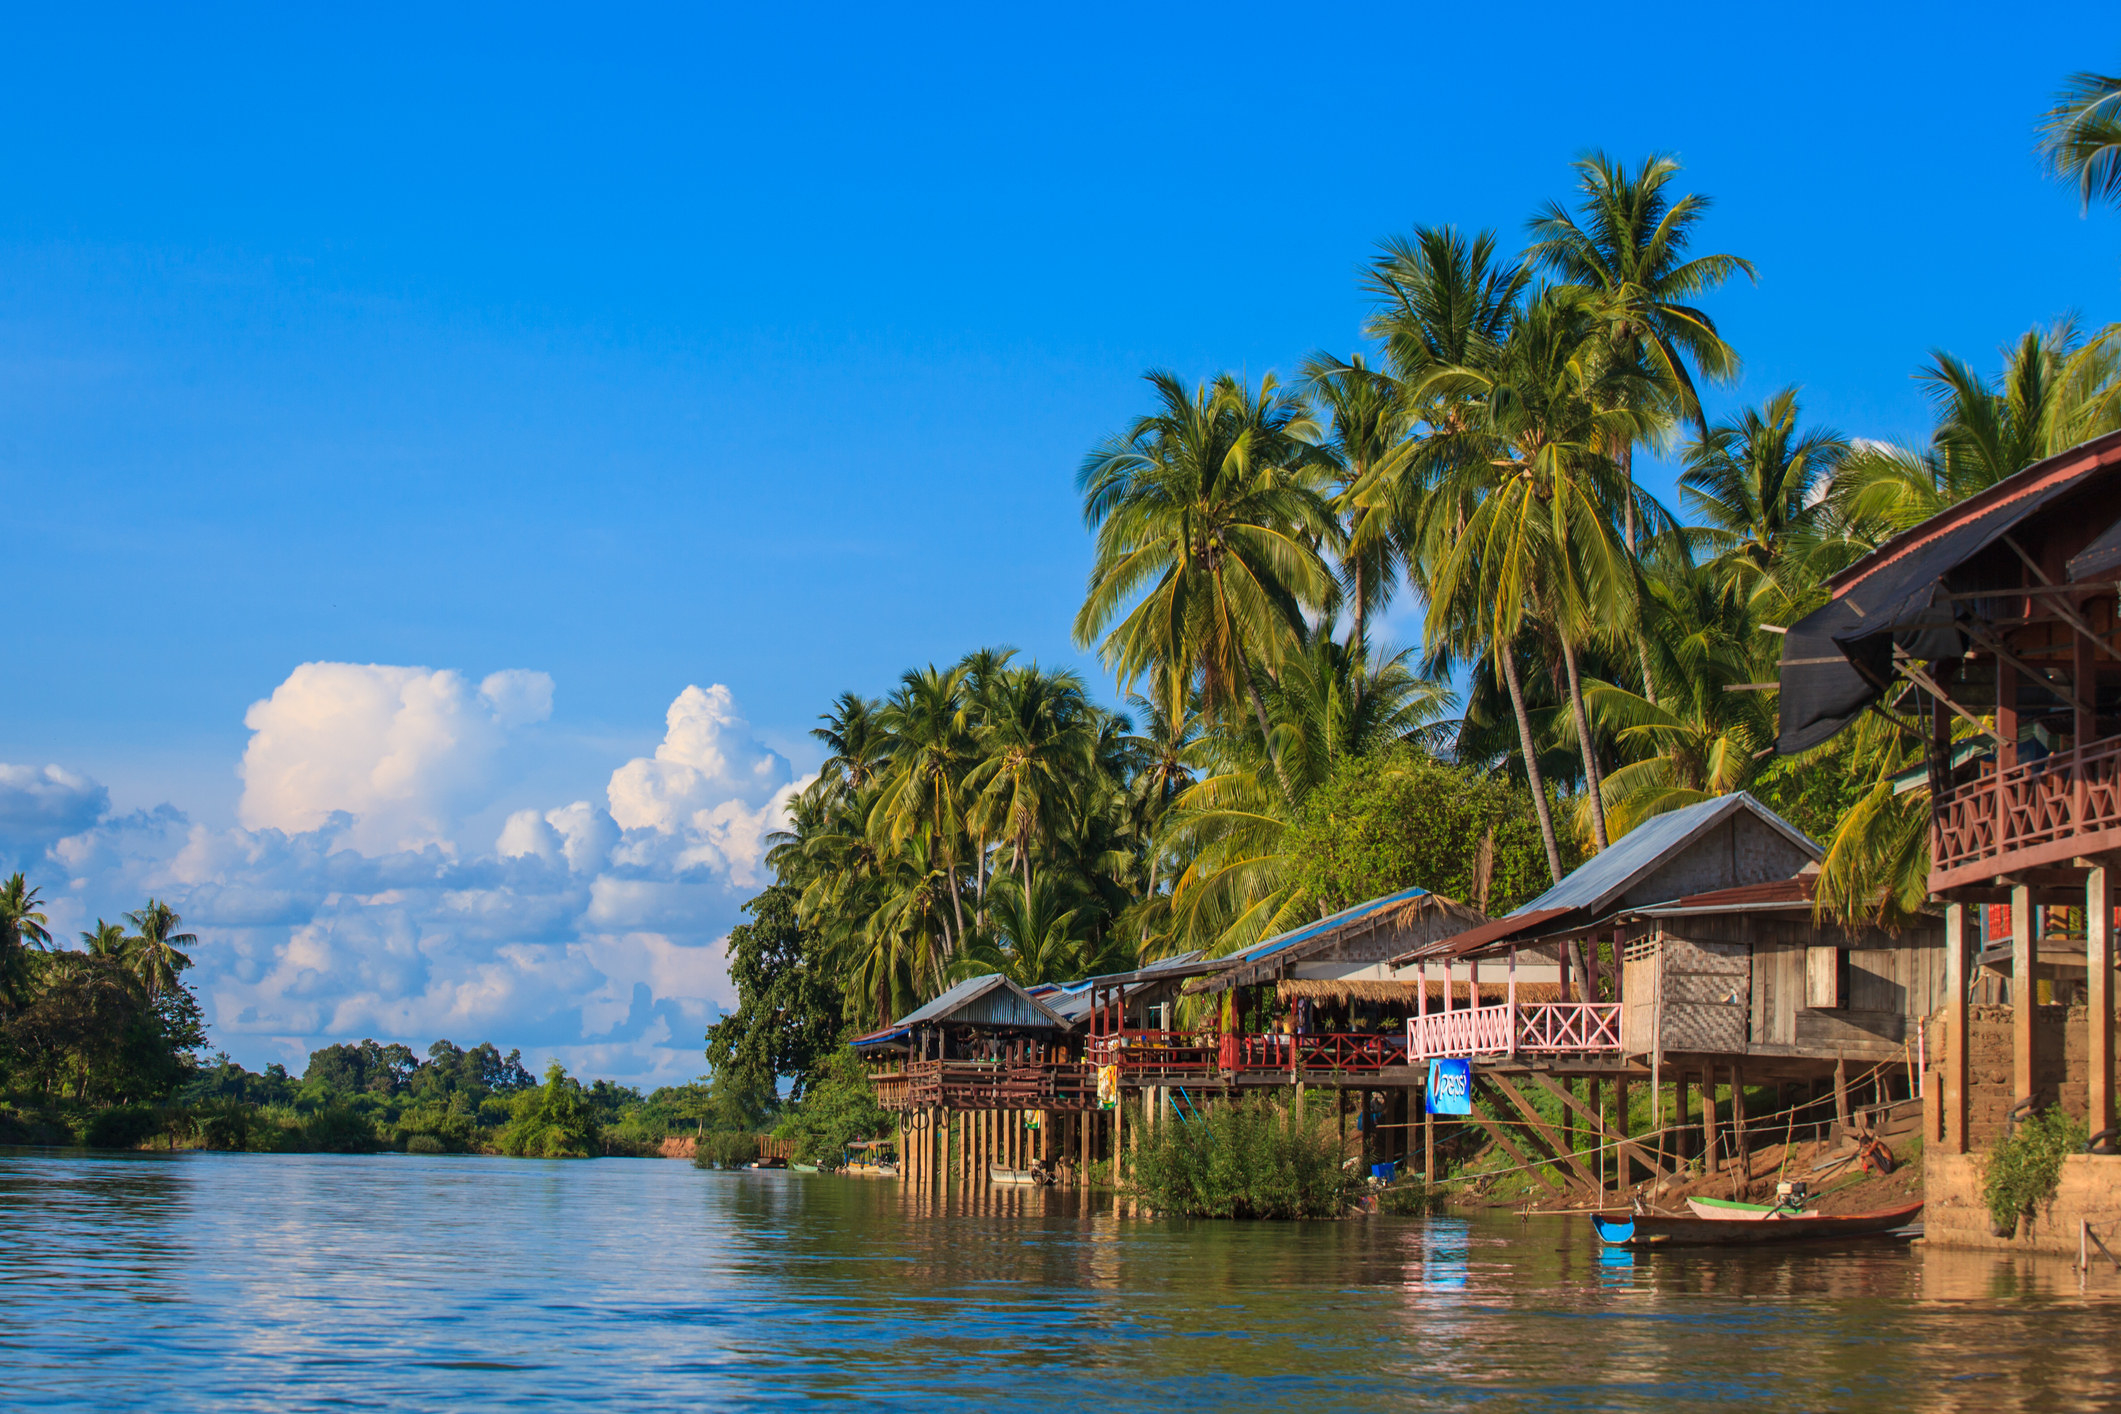 Stilt houses at Mekong river.